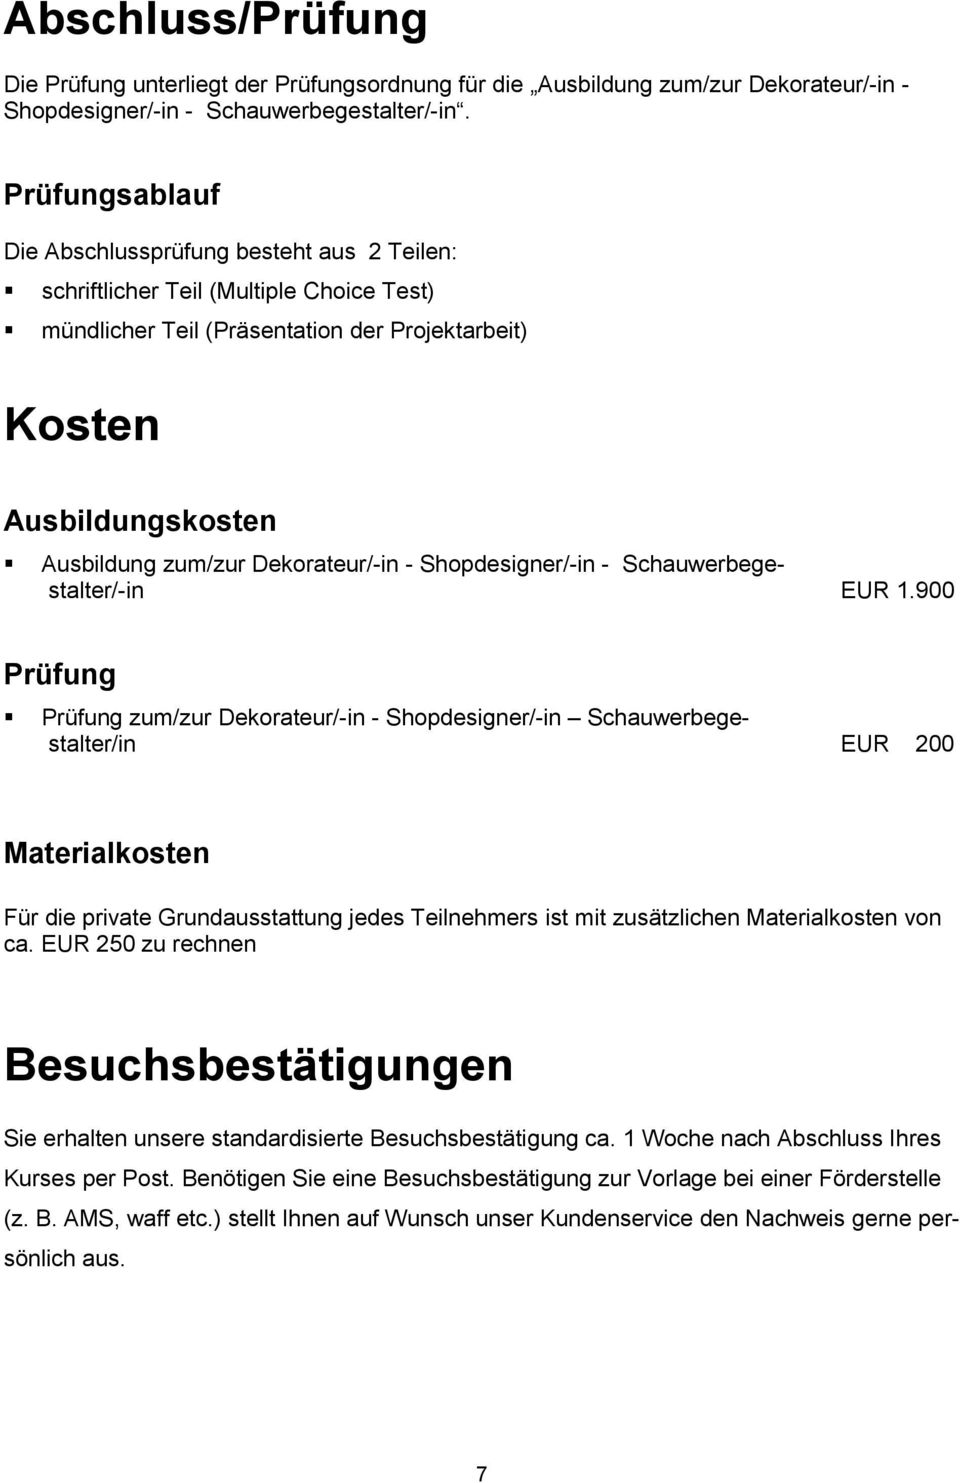 Dekorateur/-in - Shopdesigner/-in - Schauwerbegestalter/-in EUR 1.